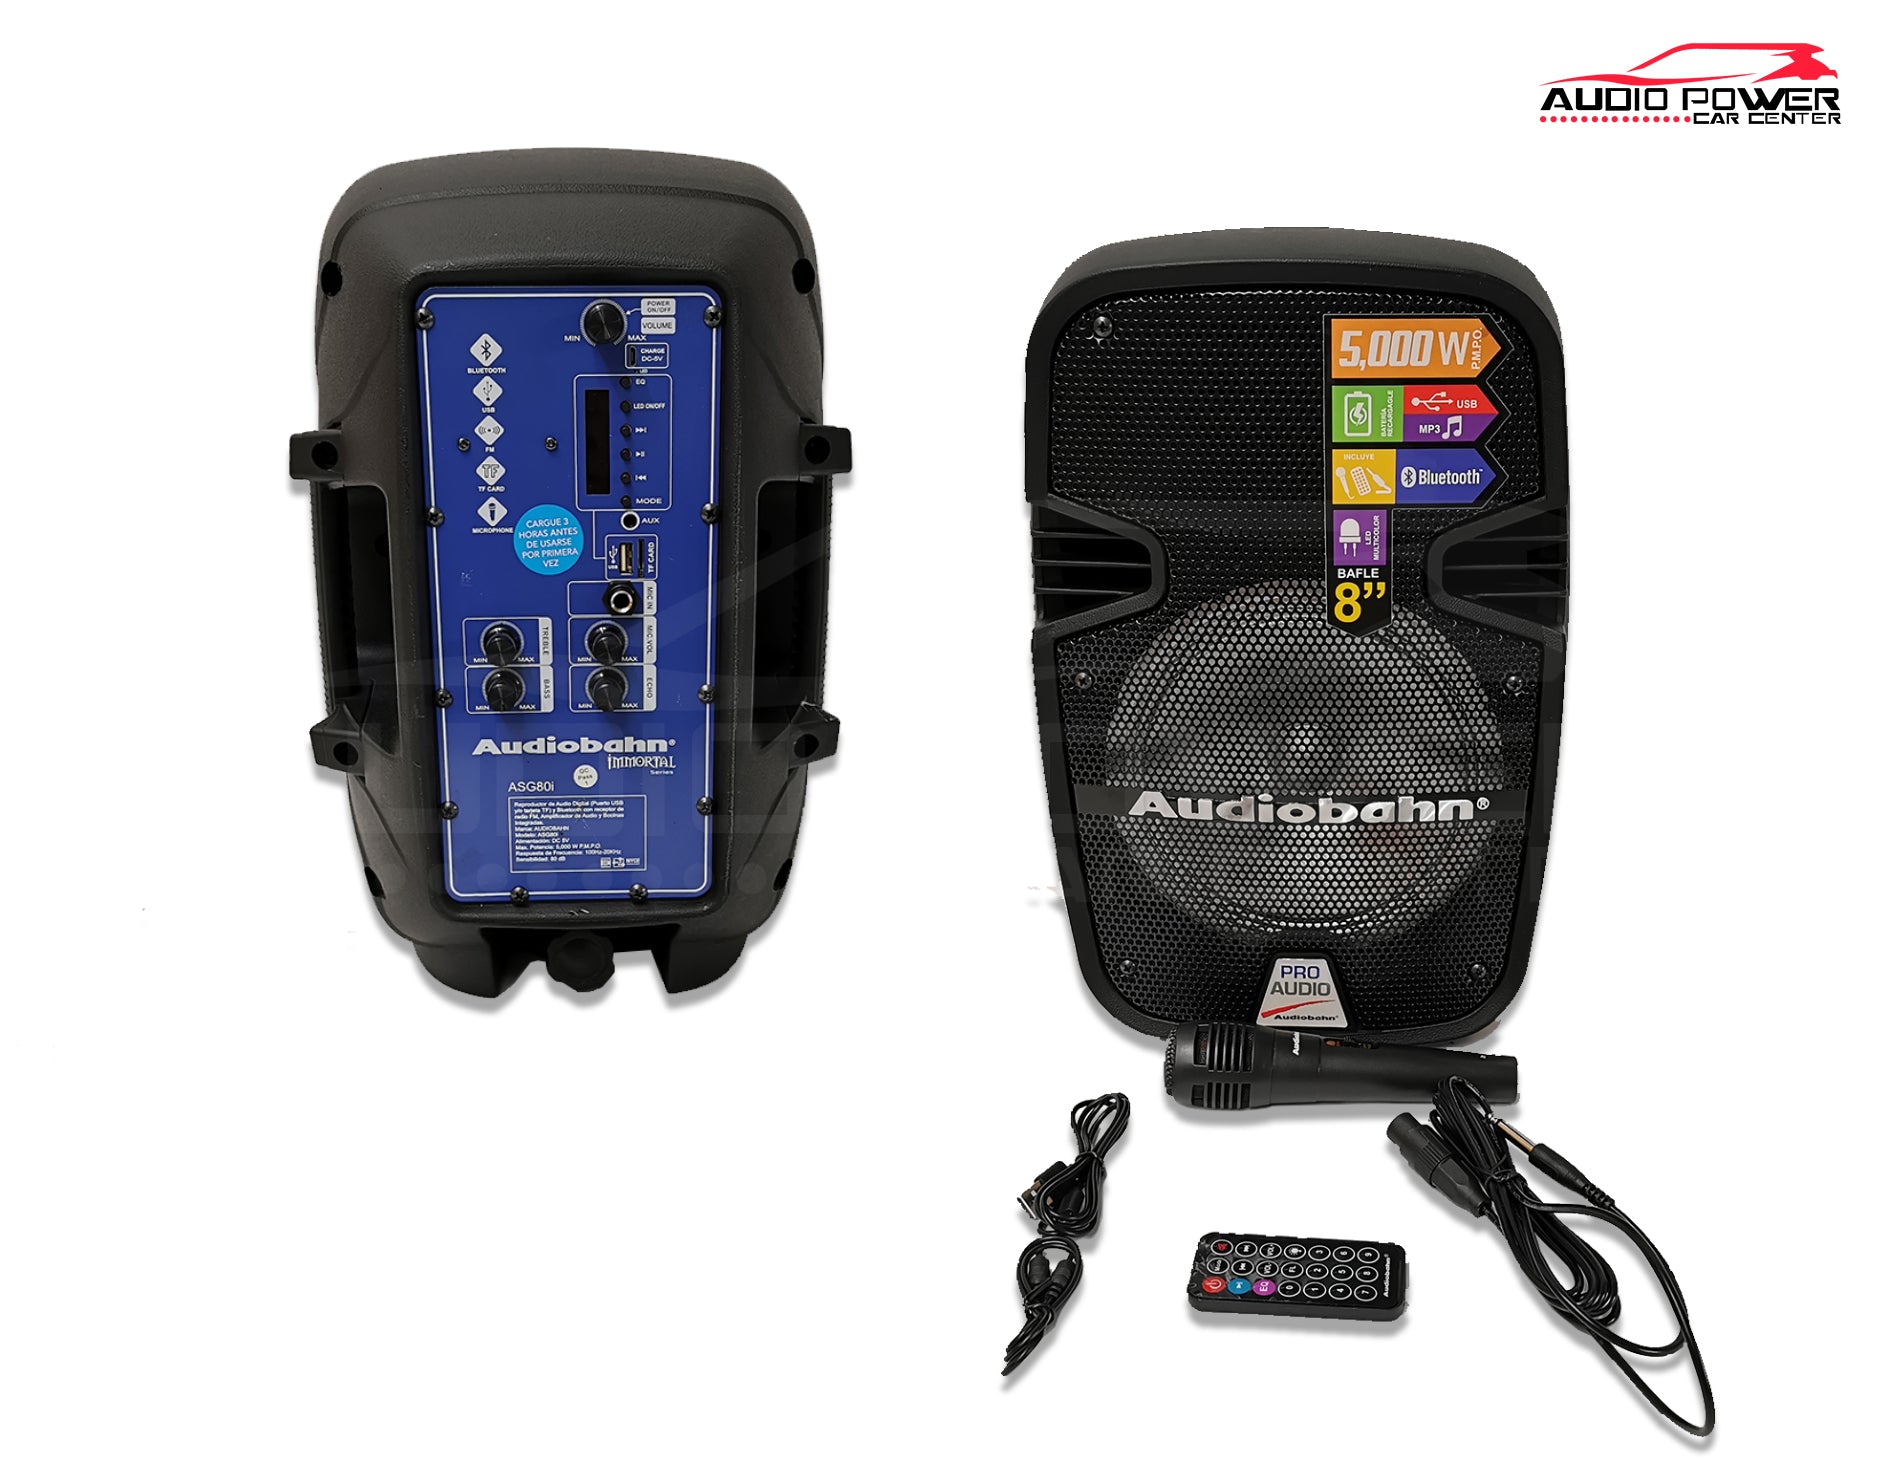 Arriba La Internet Imitación Audiobahn ASG80i Bafle de 8 pulgadas – Audio Power Mobile Shop SA de CV